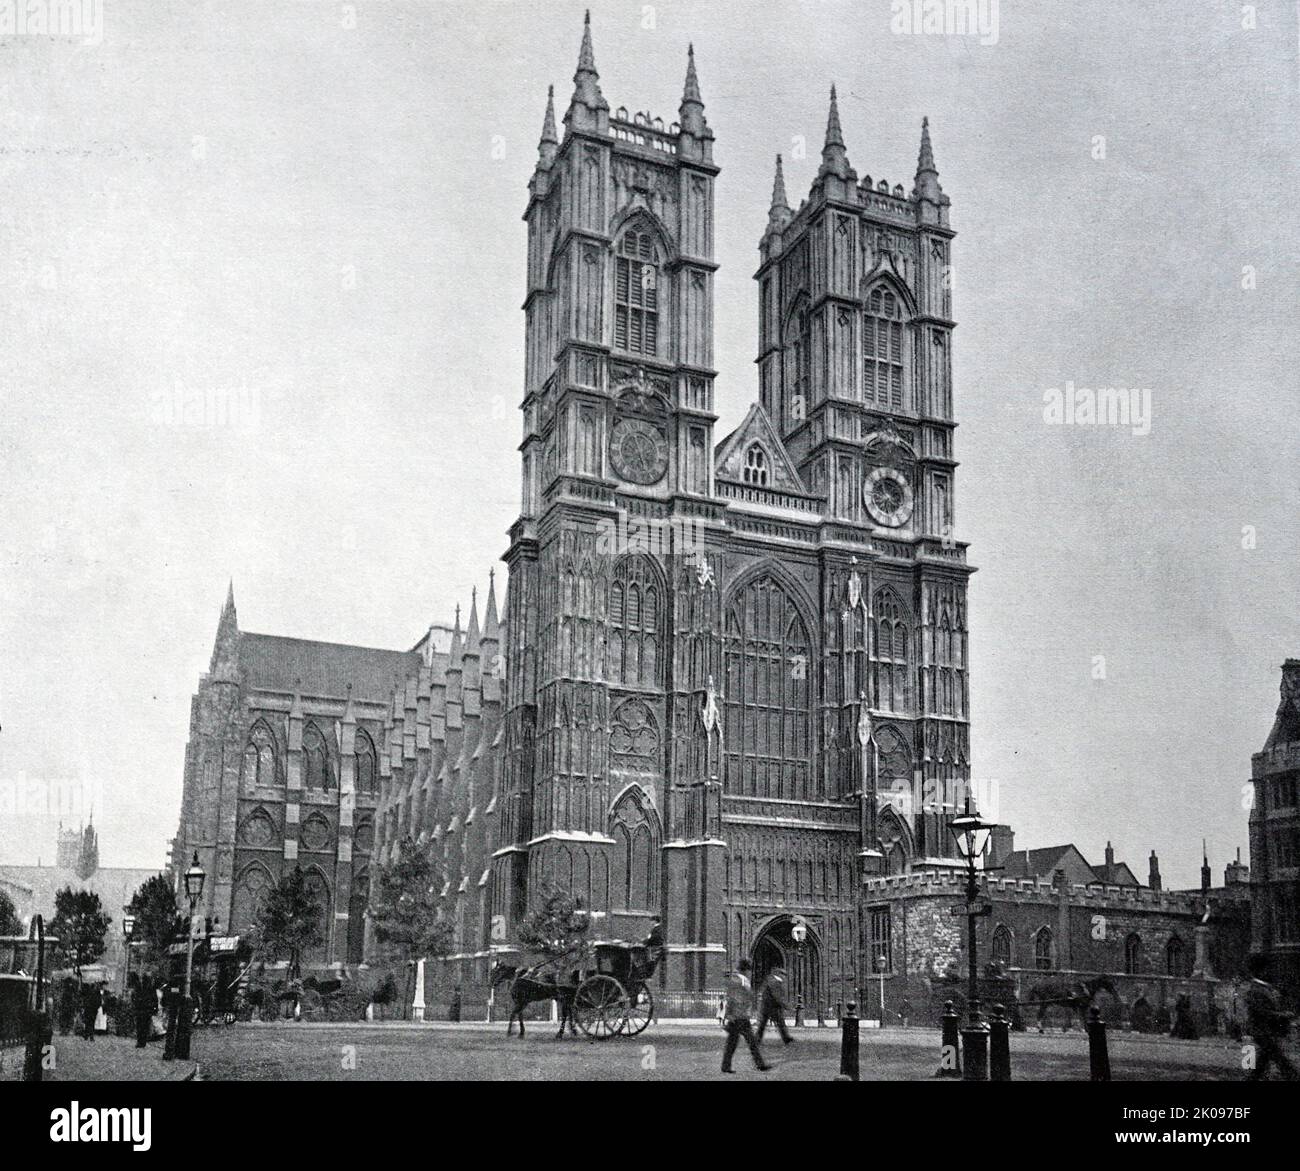 Fotografía de la época victoriana tardía en Londres, Inglaterra 1895. Foto de stock